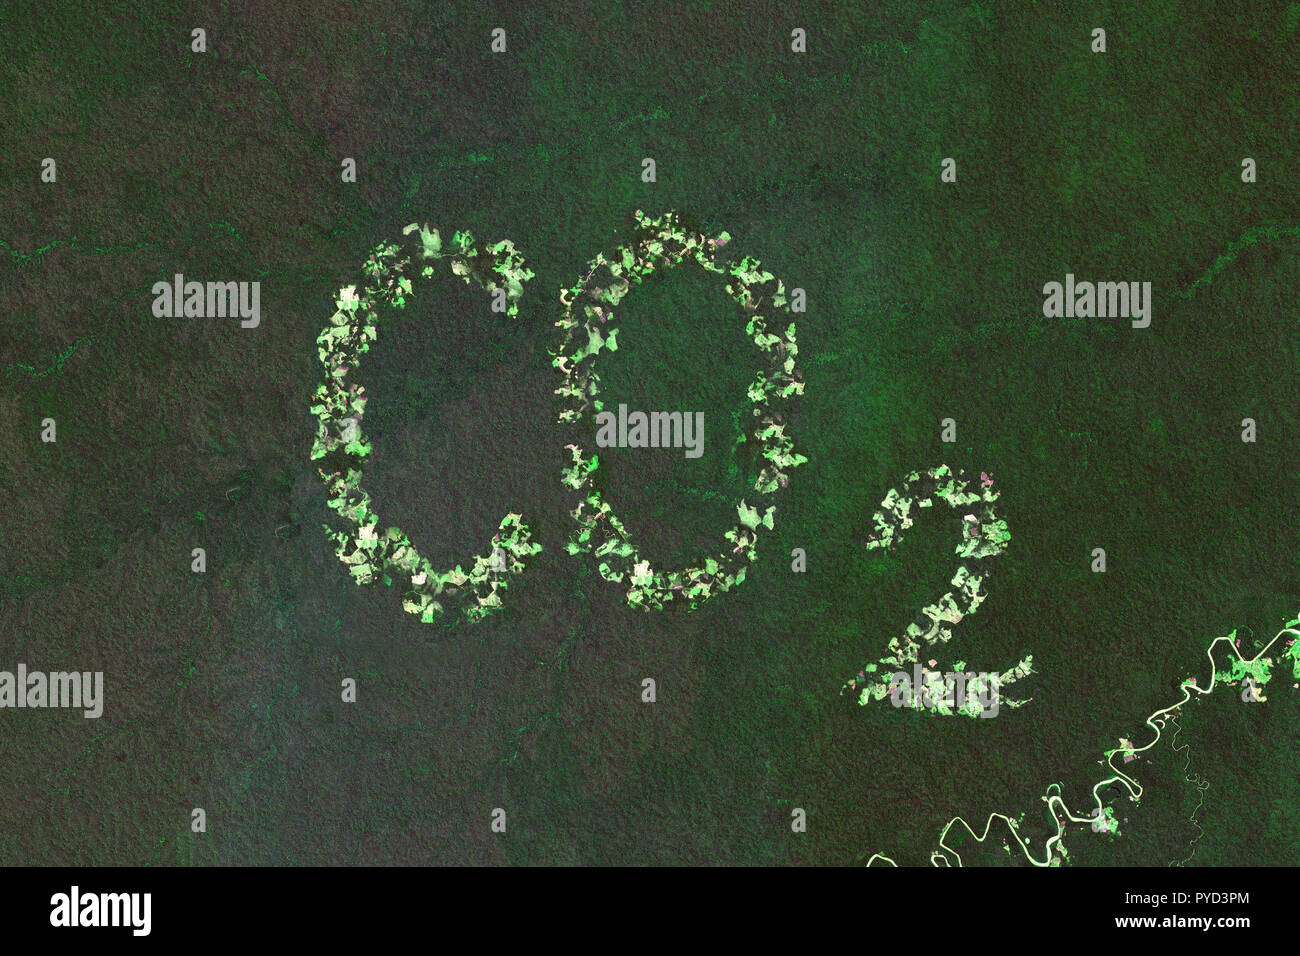 Augmentation de dioxyde de carbone dues à la déforestation dans la forêt tropicale - concept basé sur l'imagerie satellite - contient des données Sentinel Copernicus modifié Banque D'Images